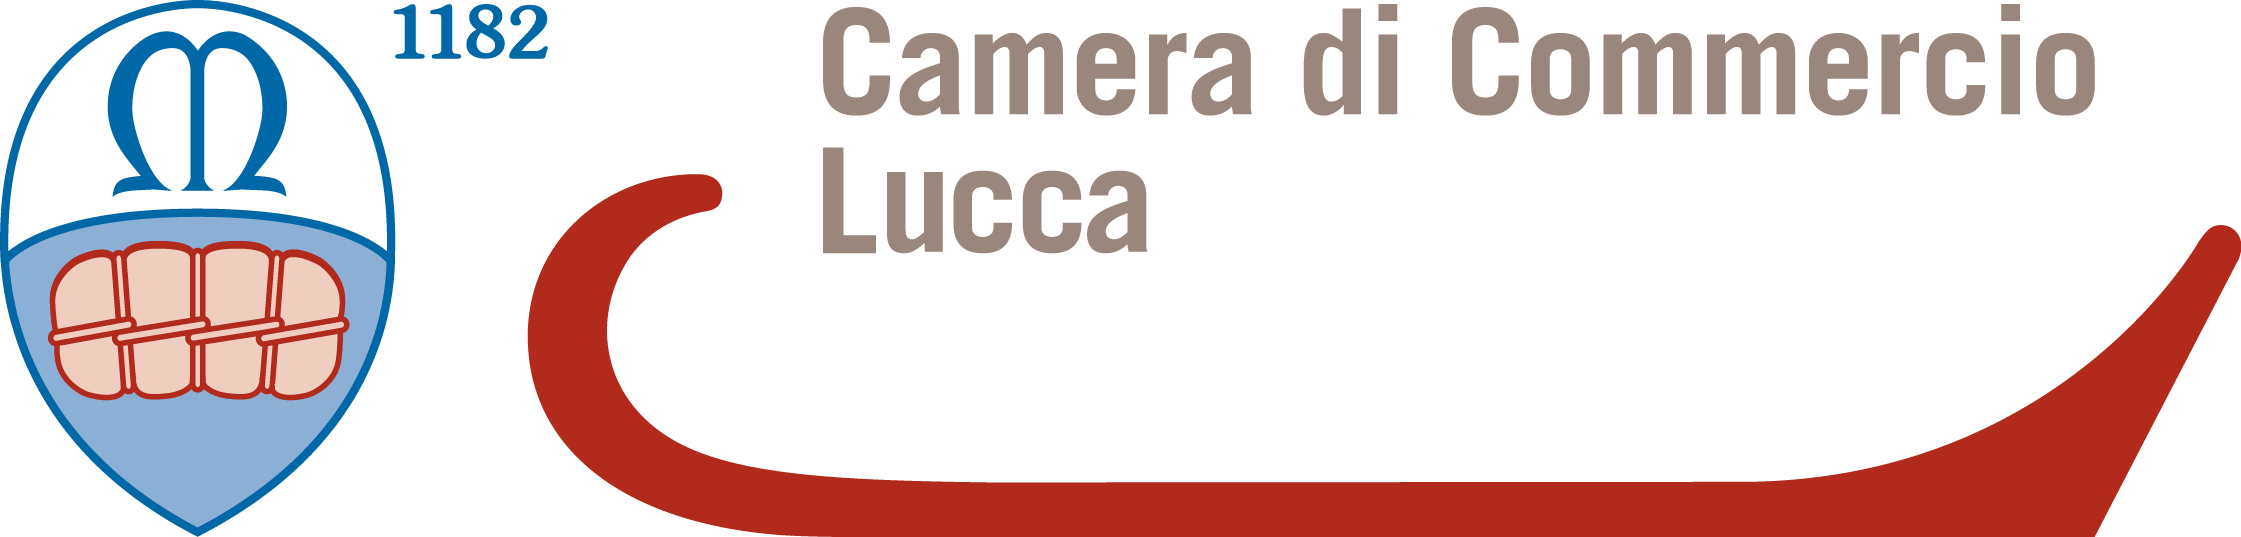 CCIAA Lucca